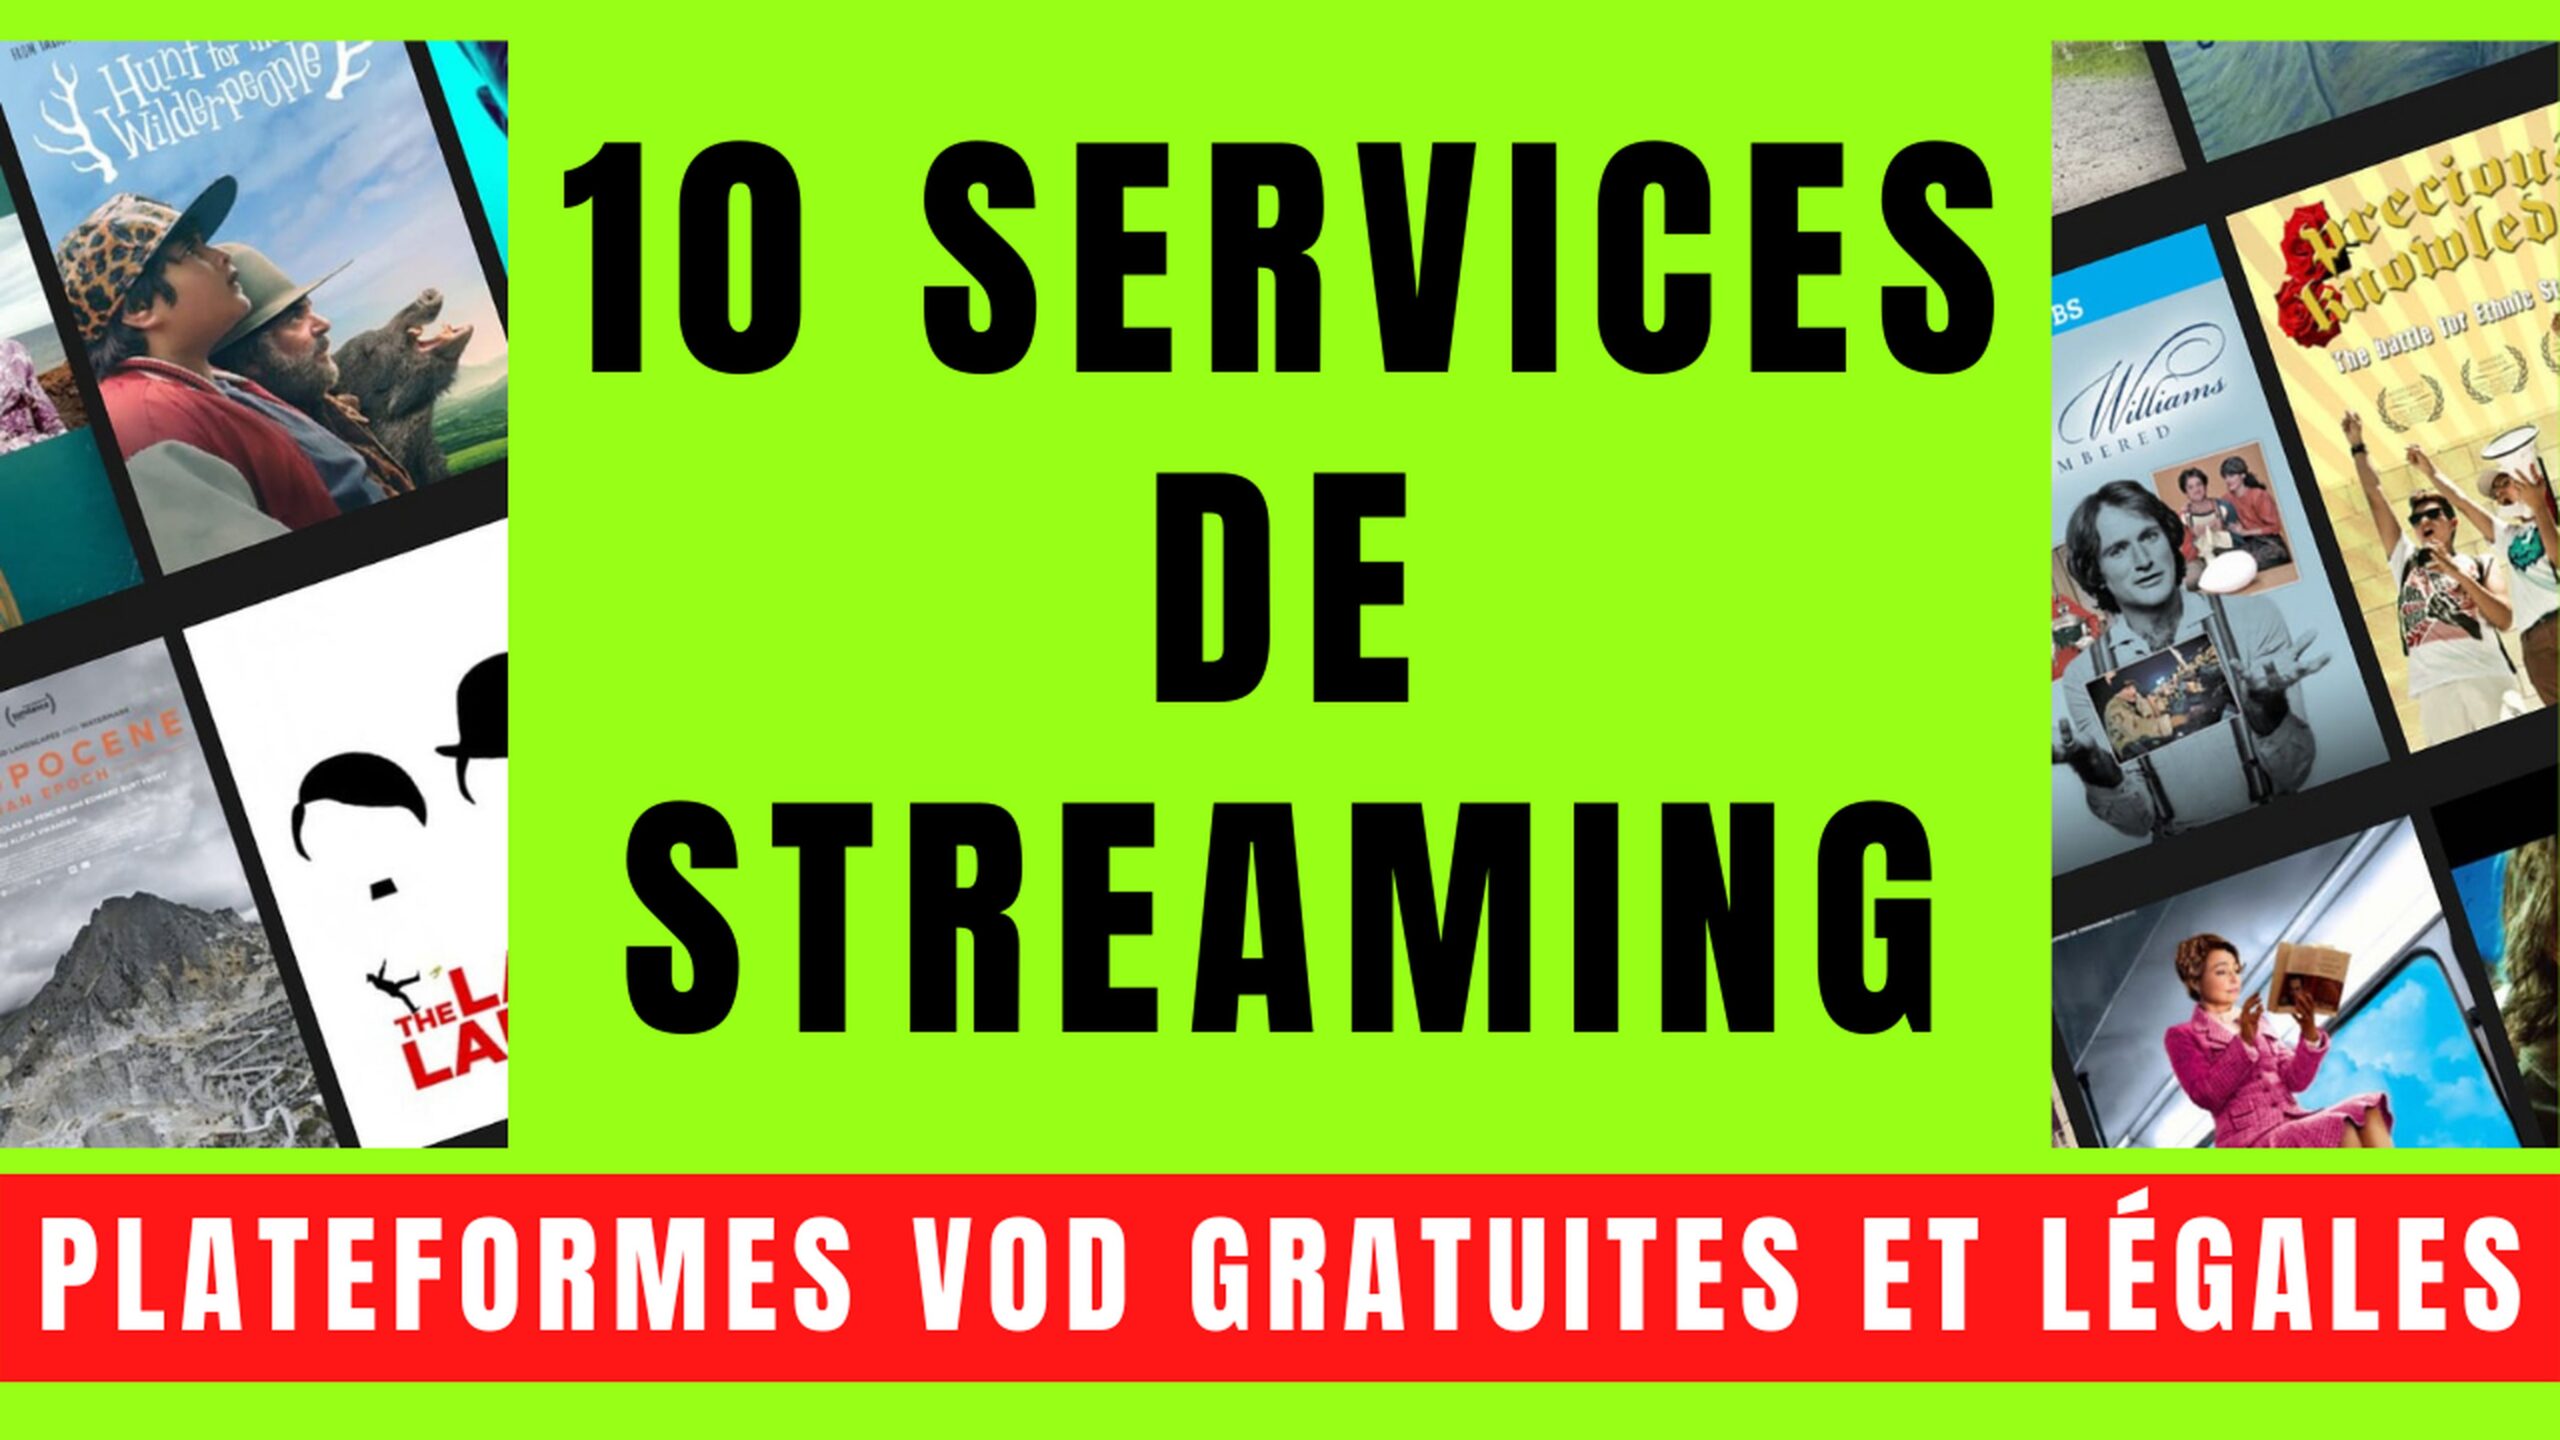 10 SERVICES VOD avec STREAMING GRATUIT et LÉGAL 20